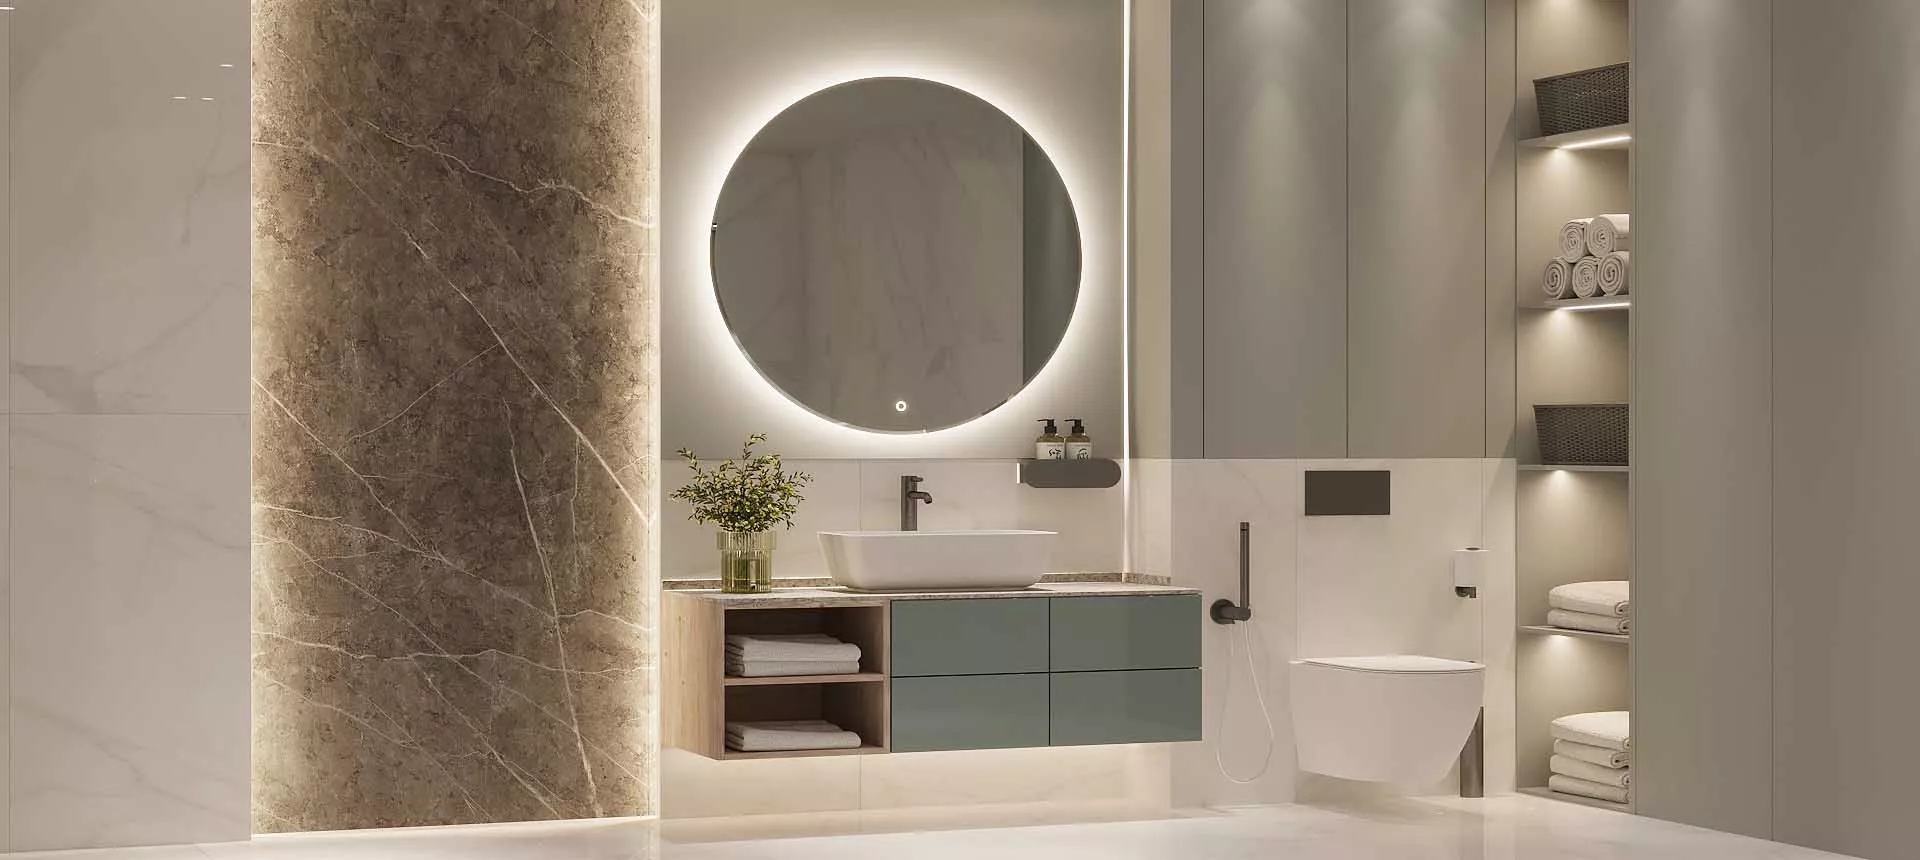 Как сделать ремонт ванной комнаты с использованием подсветки: модные и оригинальные решения